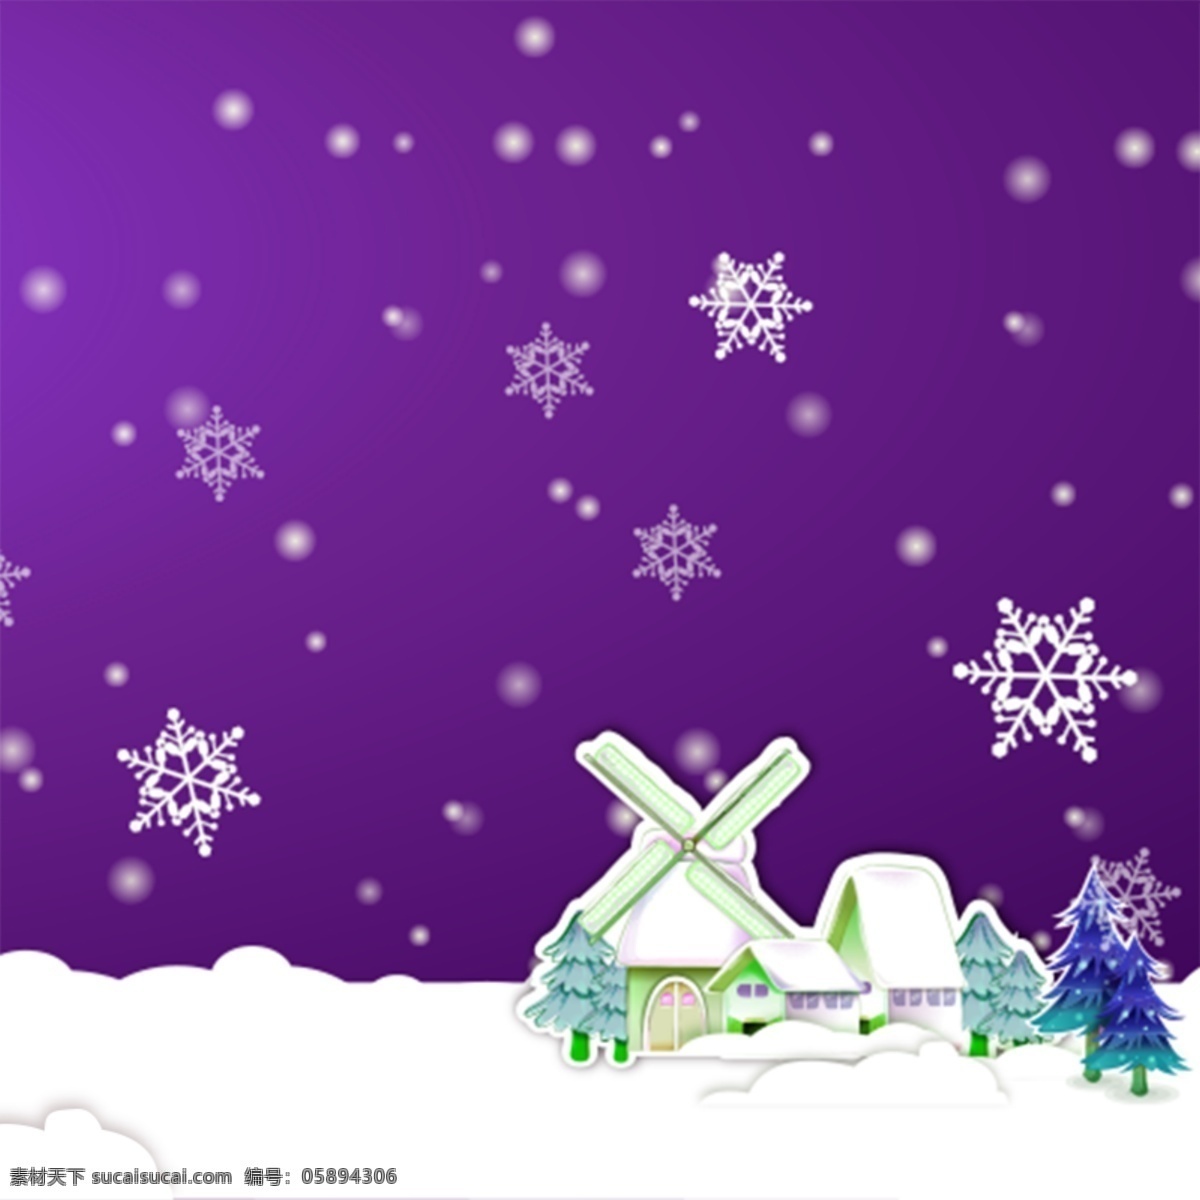 冬季背景插画 冬季背景 冬季插画 冬天 广告设计模板 源文件 冬季 氛围 模板下载 冬季氛围 写意背景 紫色